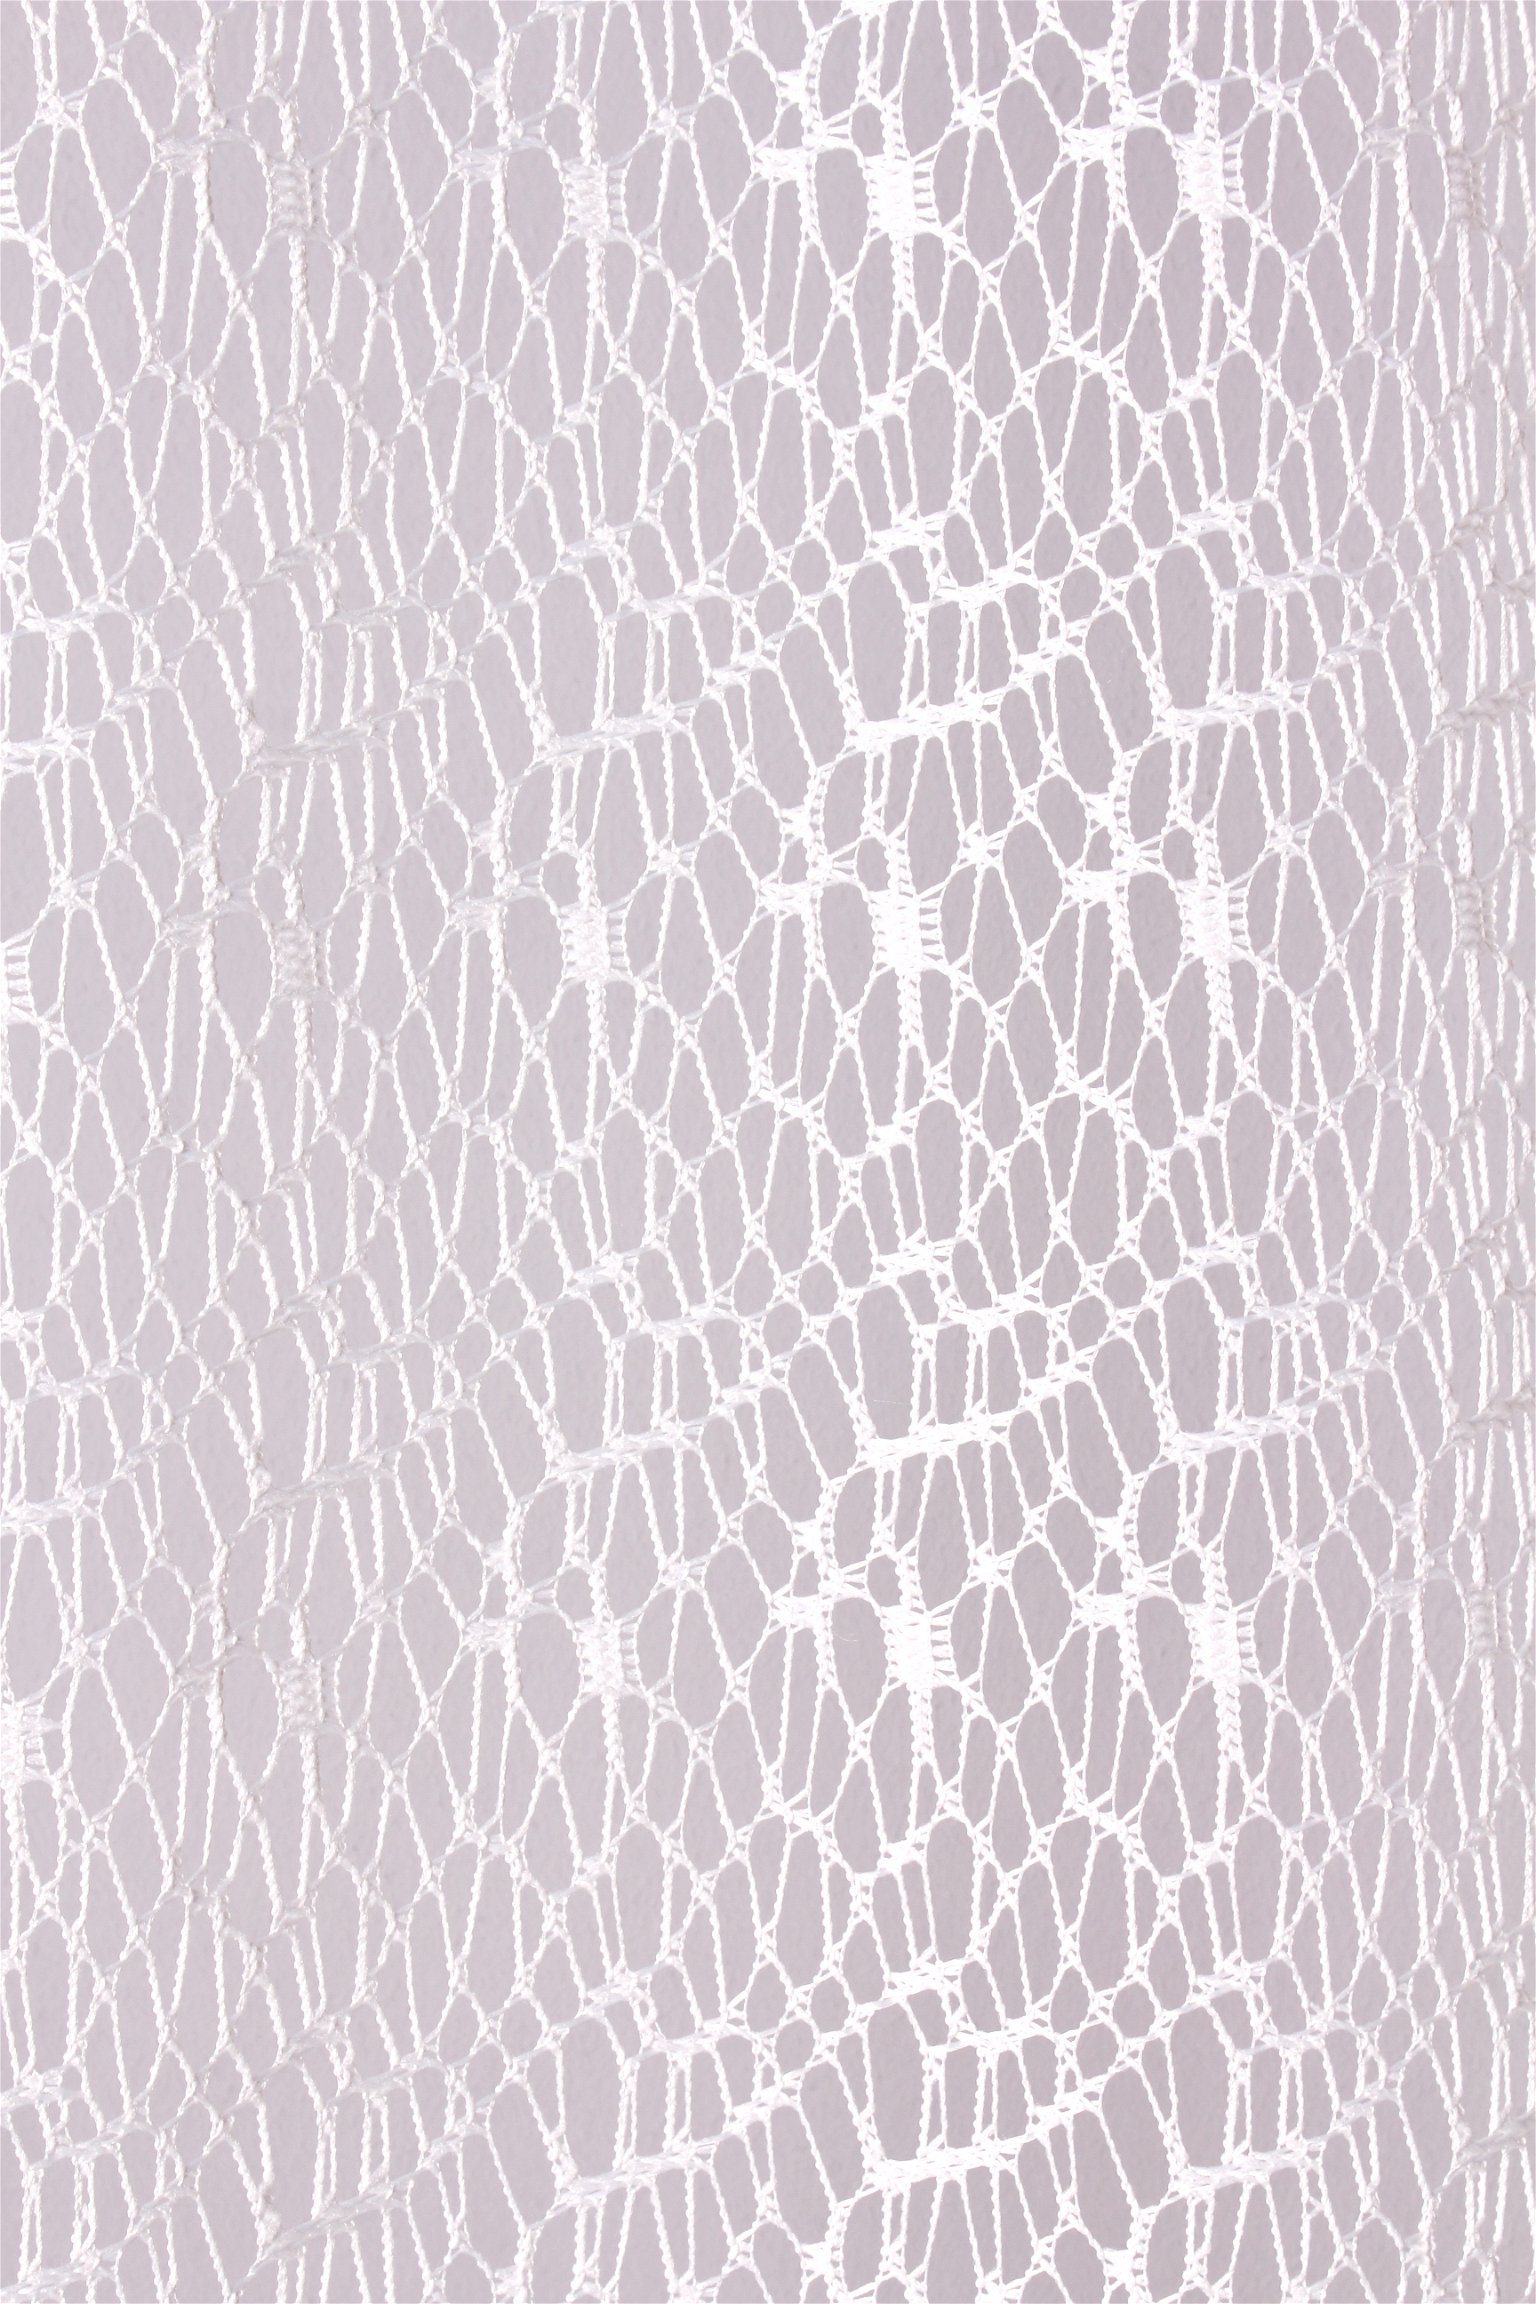 Dieninė užuolaida REDA, su žiedais, baltos spalvos, 140 x 245 cm - 2